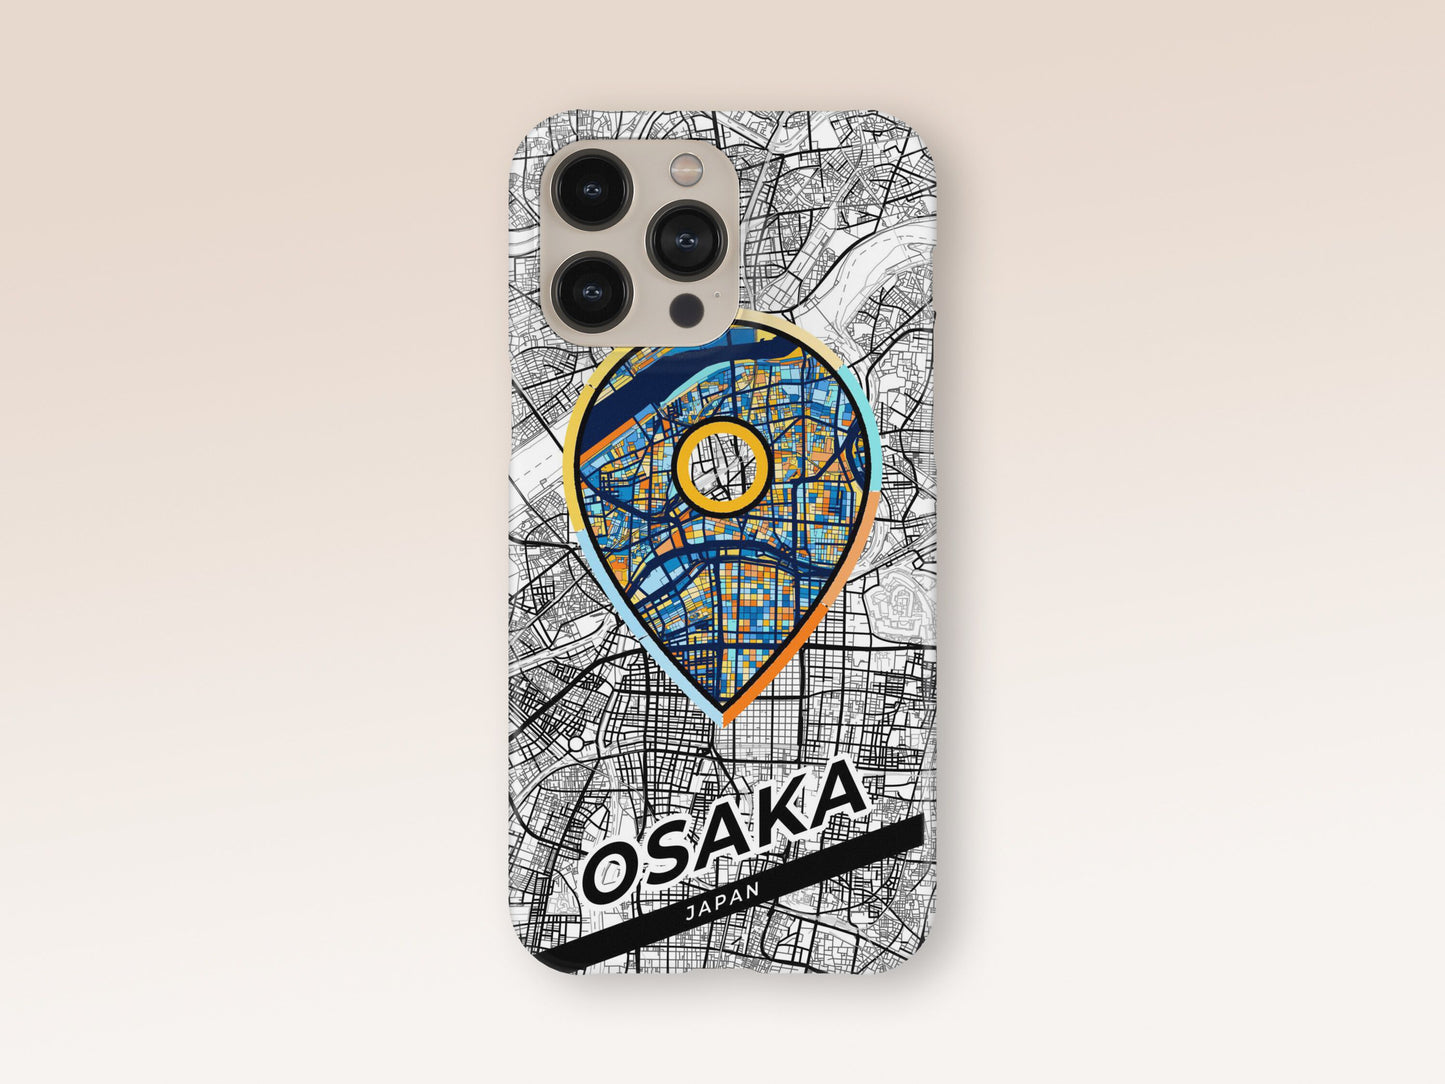 Osaka Japan slim phone case with colorful icon 1